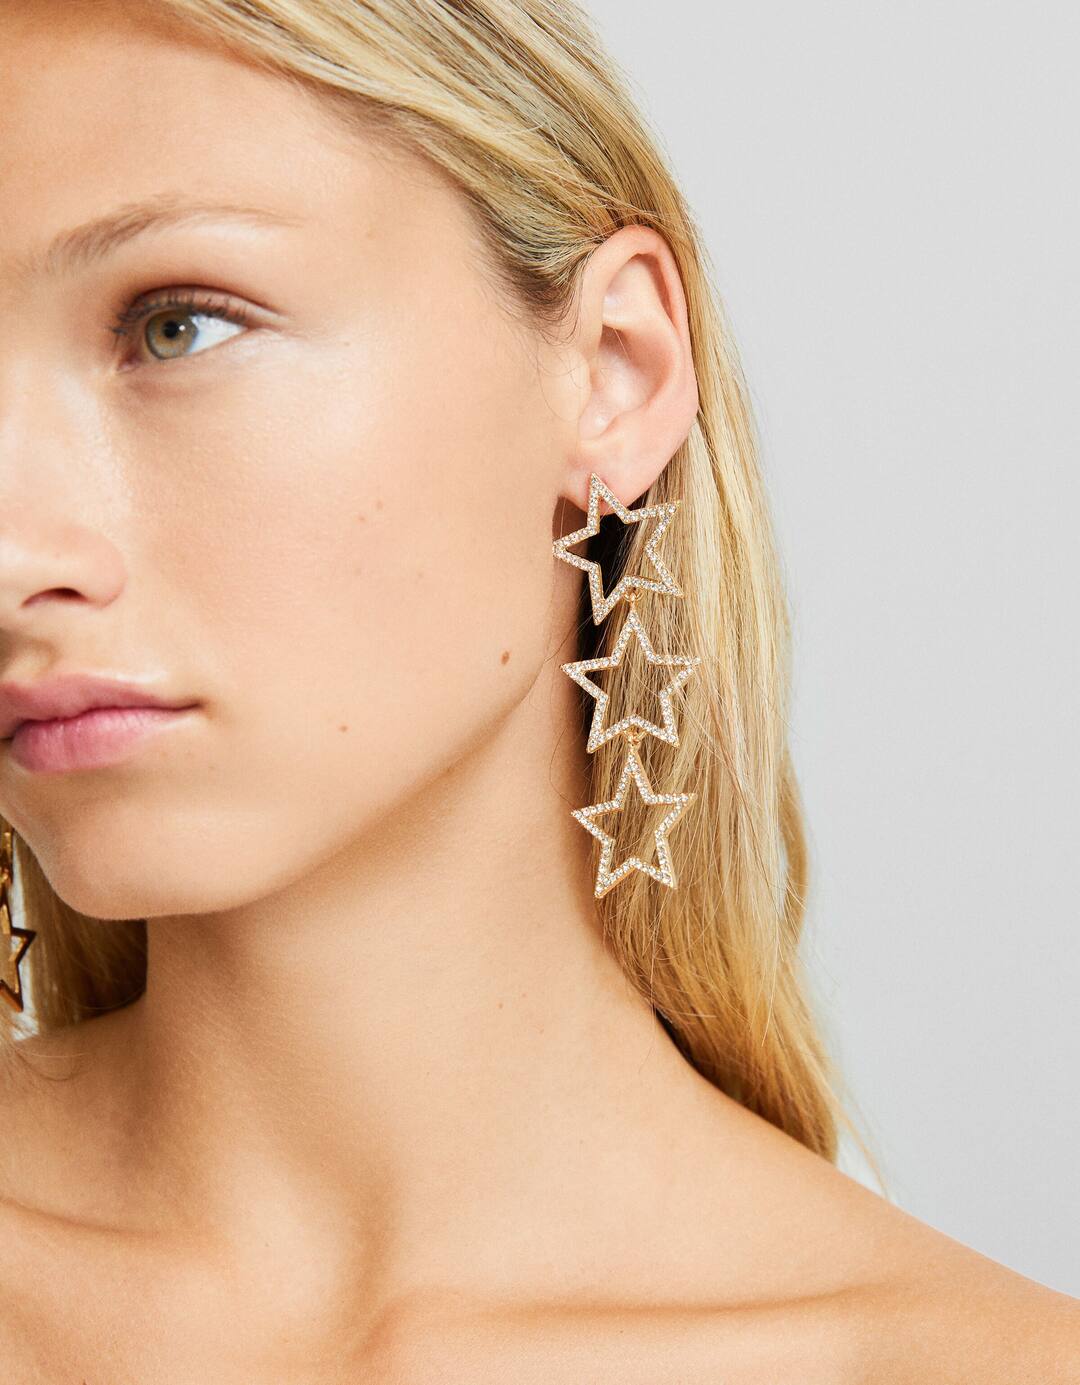 Rhinestone star cascade earrings